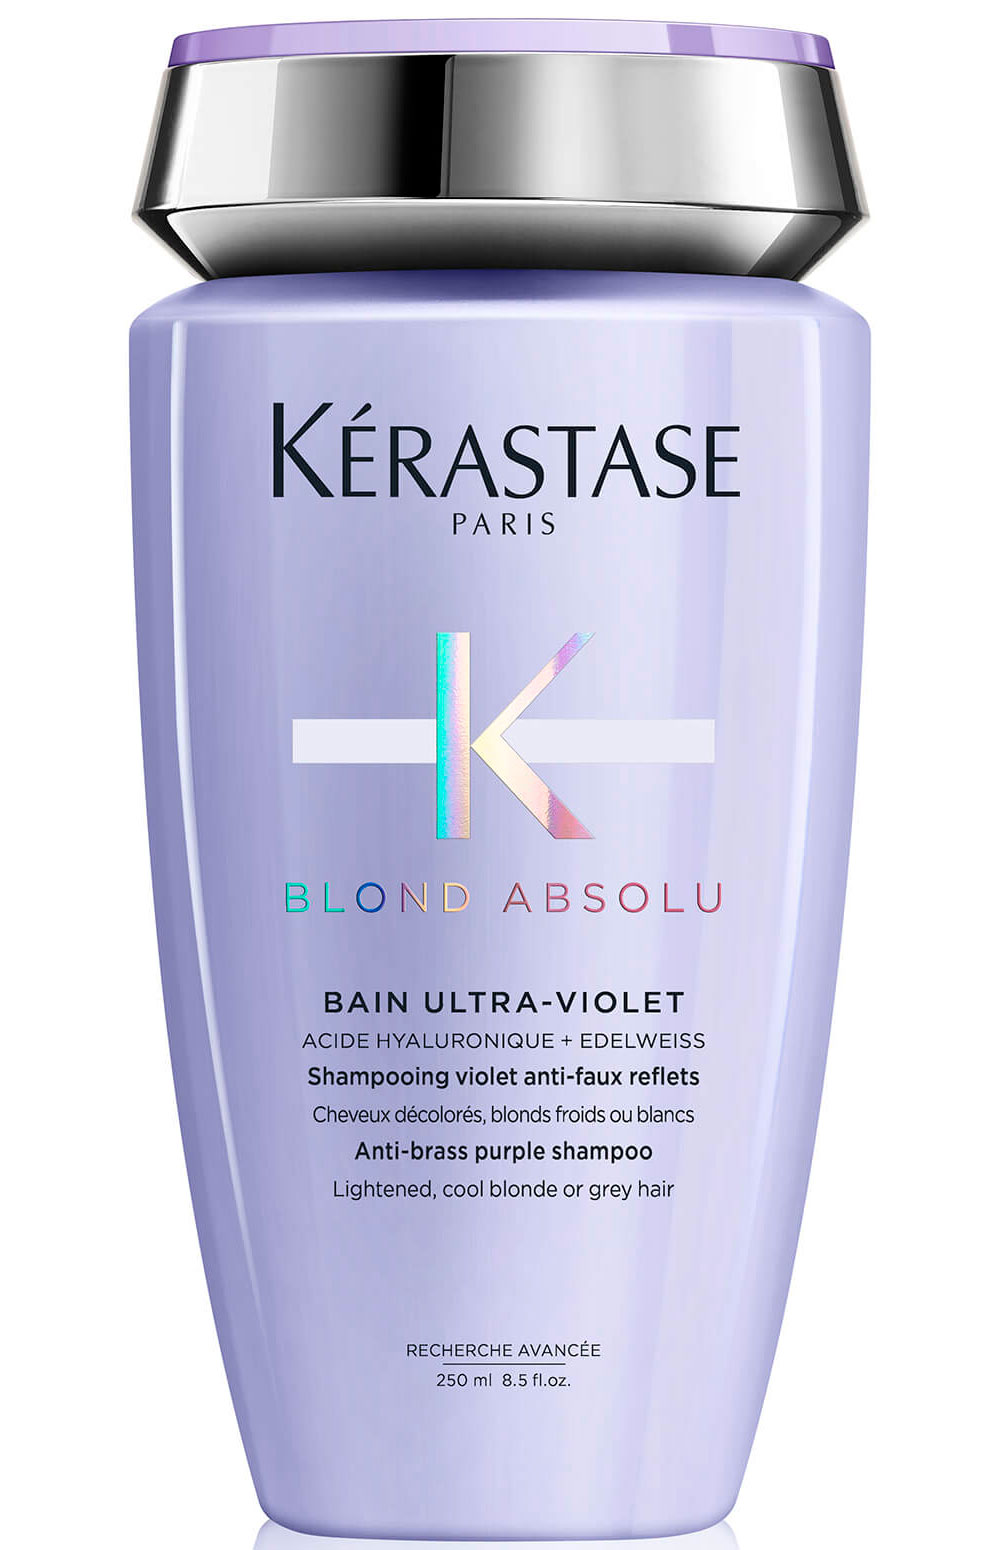 Kerastase Blond Absolu Bain Ultra-Violet Shampoo - Шампунь-ванна фіолетовий, що нейтралізує жовті півтони, 250 мл